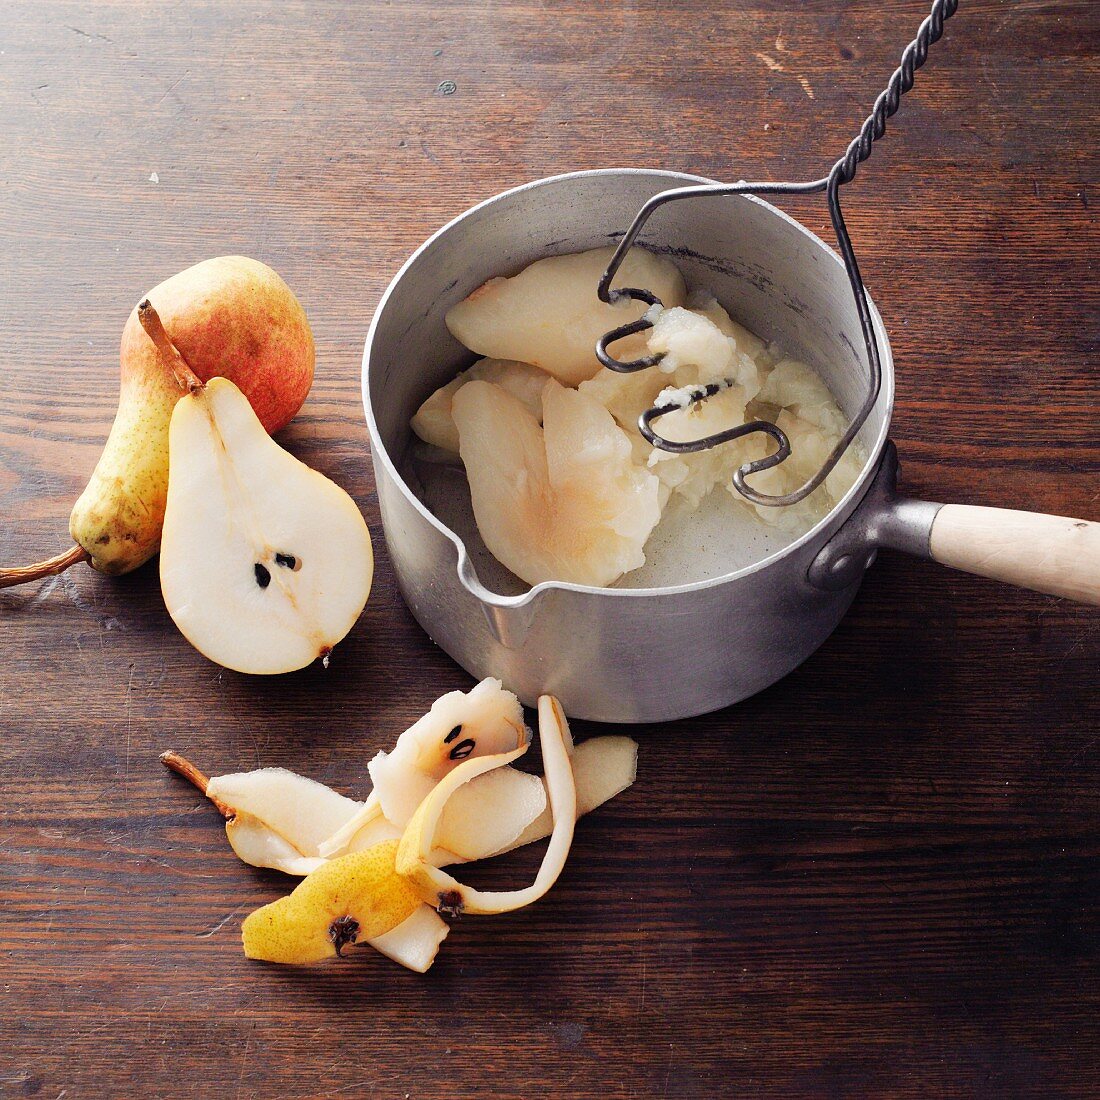 Baldmoney pear honey à la Hildegard von Bingen being made: pears being stewed